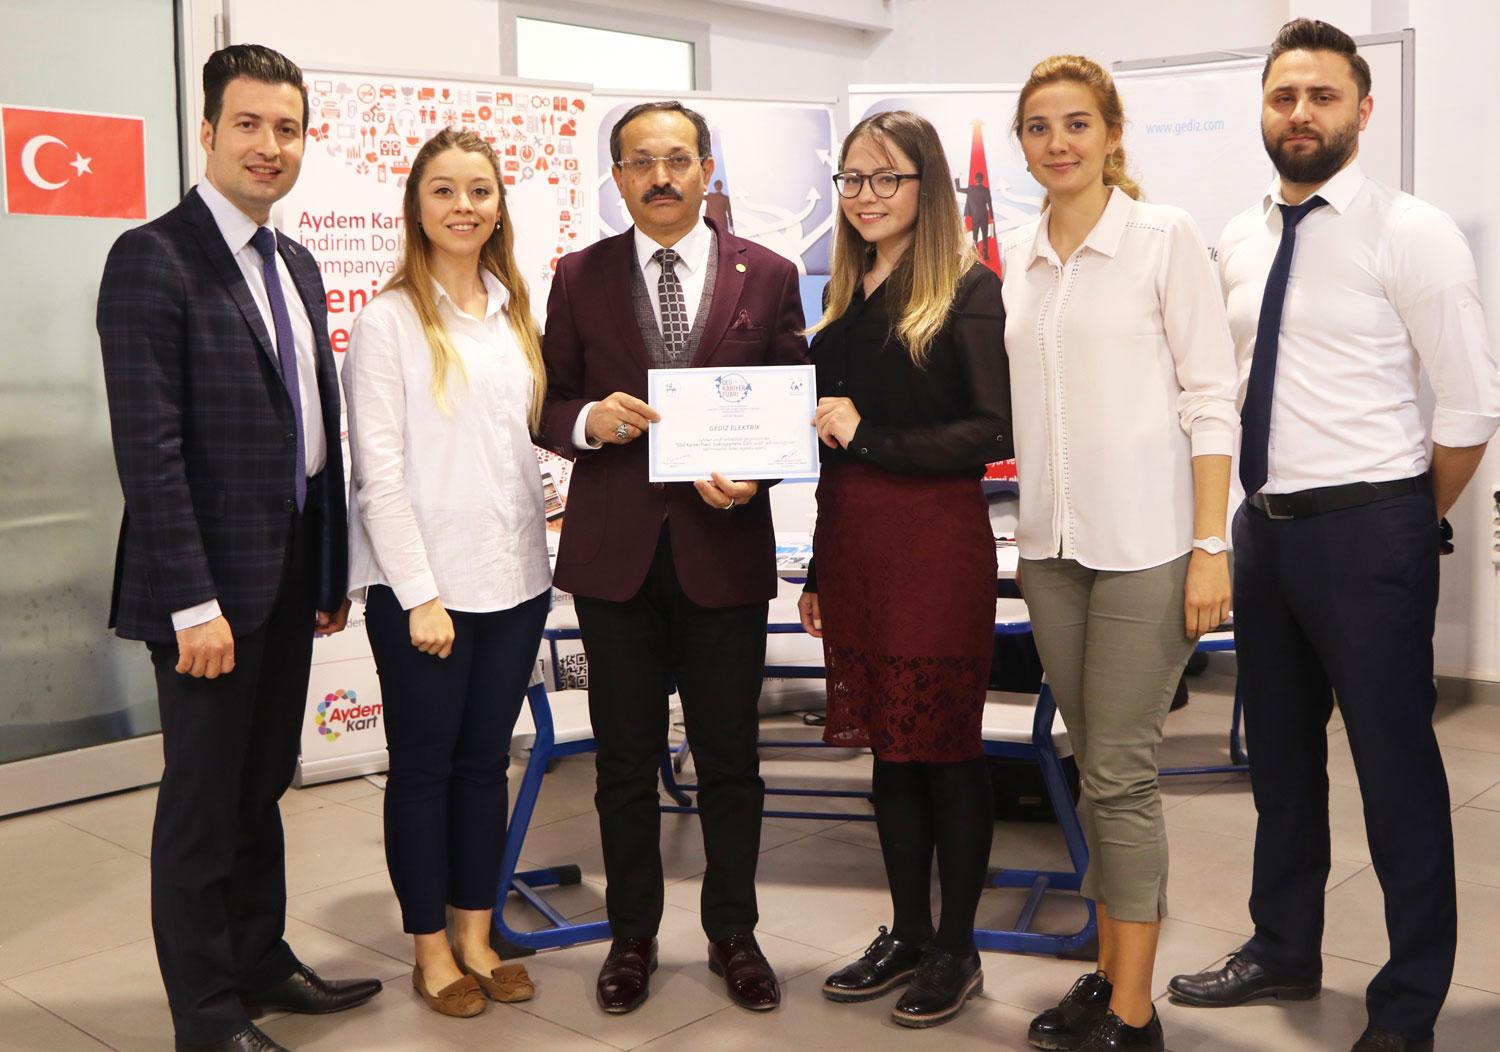  Aydem Gets Together with Students from Dokuz Eylül University at the Career Fair - Dokuzçeşmeler Day 2018 